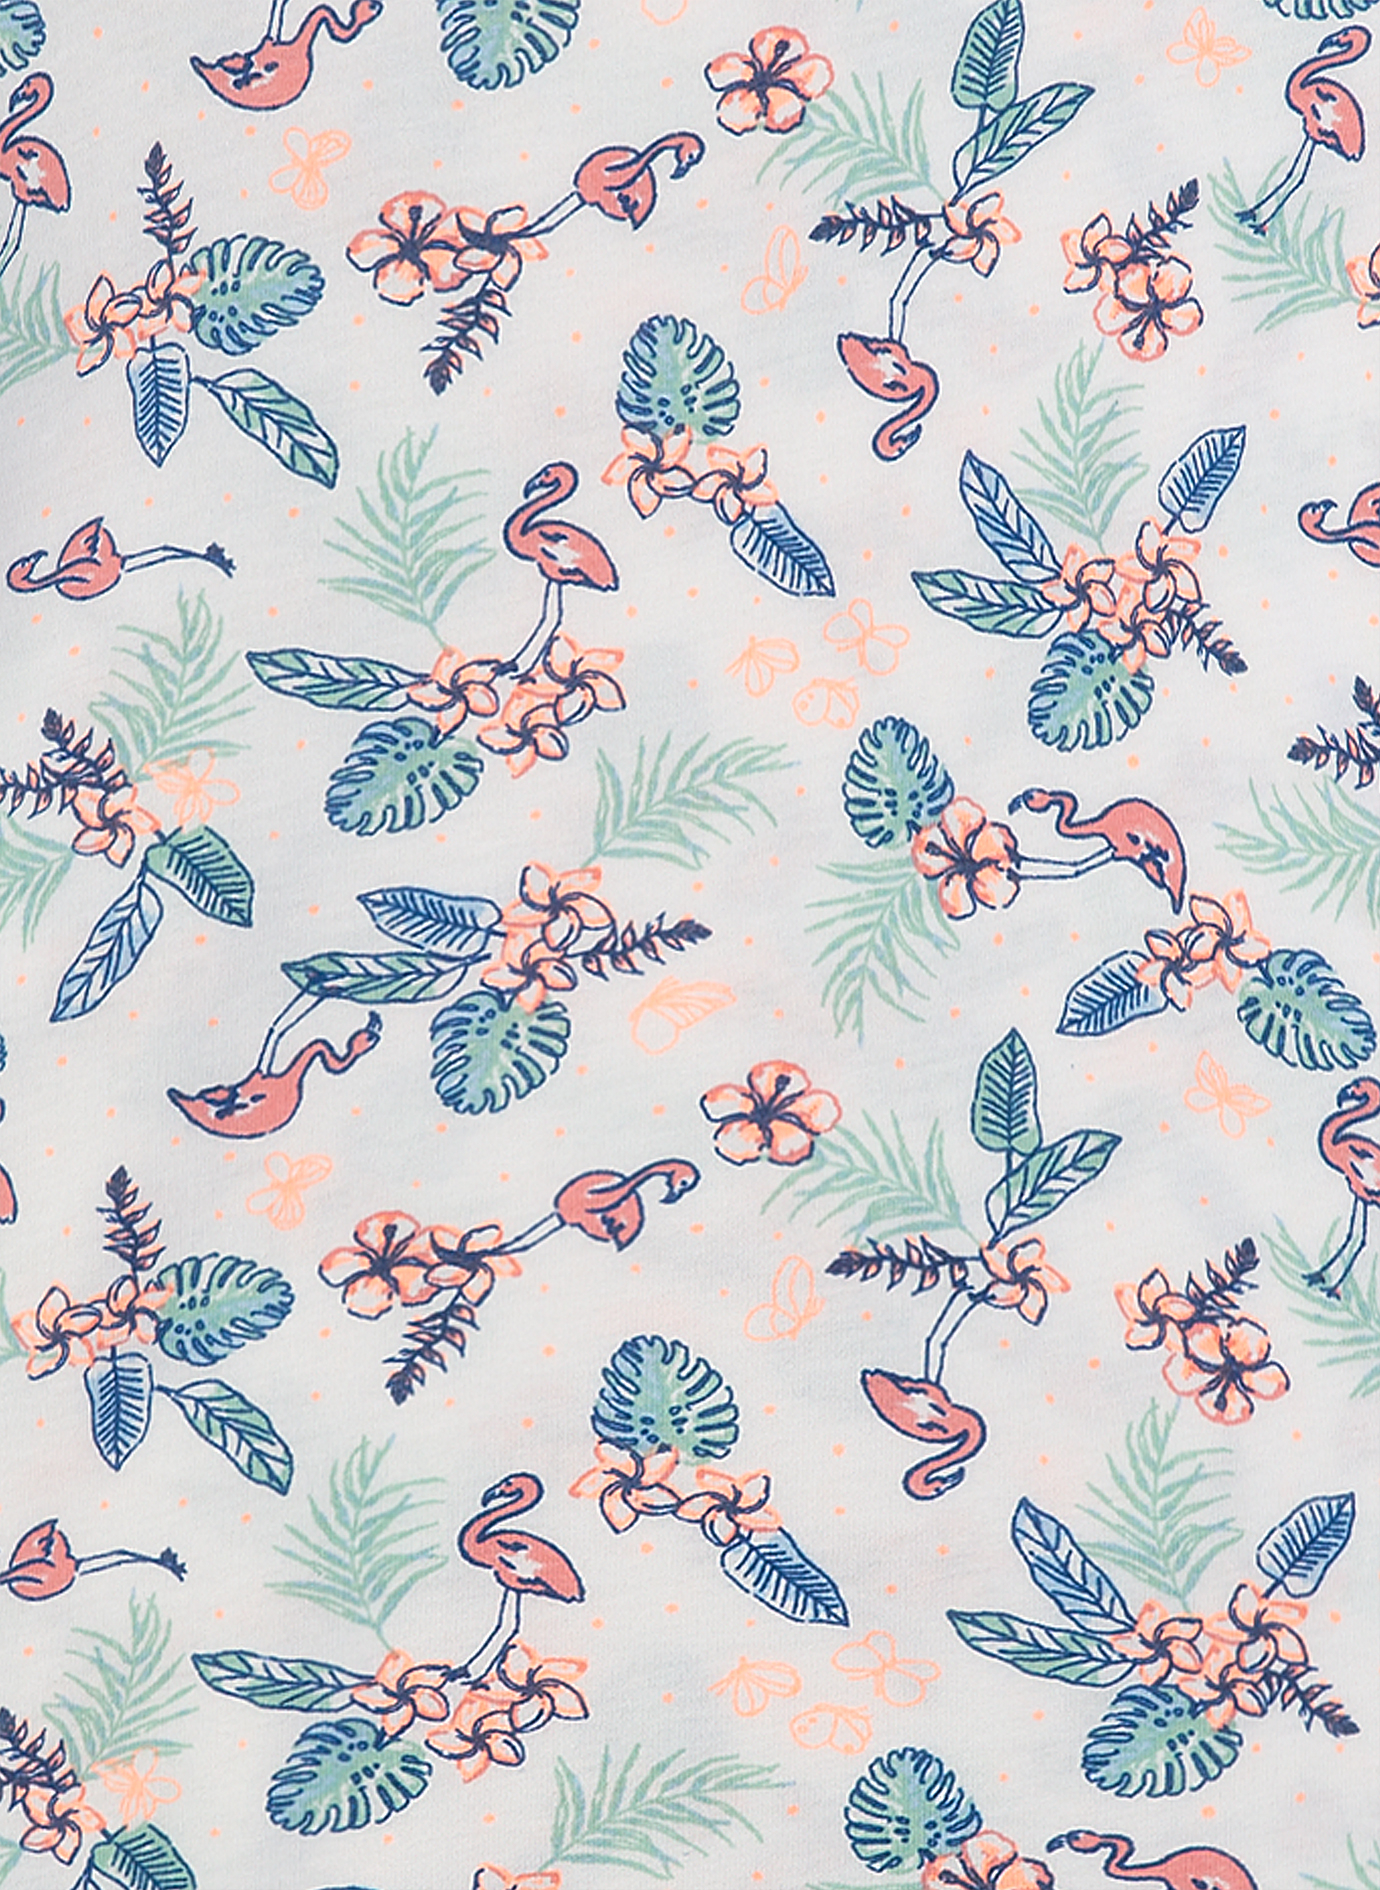 Mädchen-Nachthemd Blumen-Allover Flamingo Breeze 